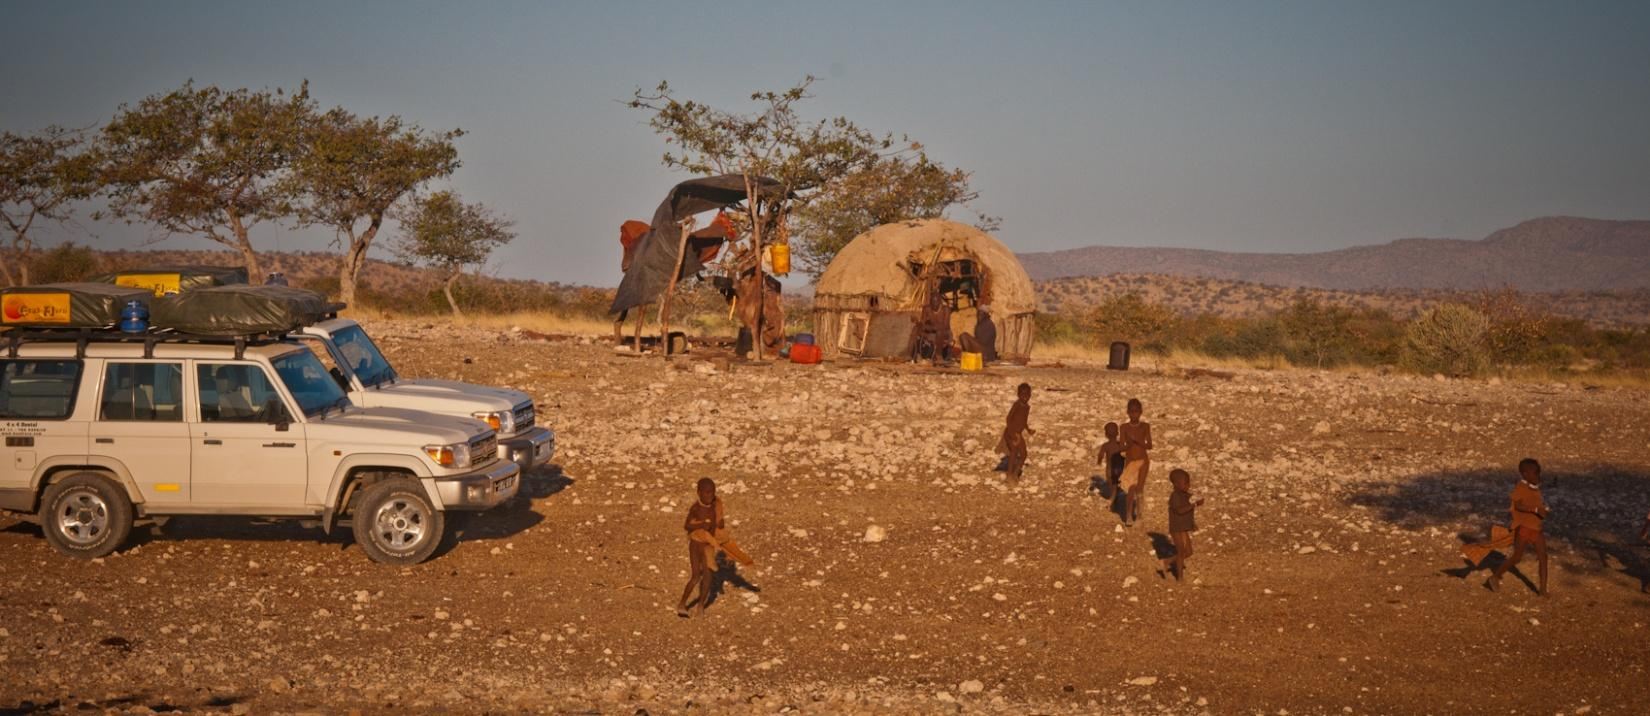 dotrzeć do wiosek Himba, nie będącymi wioskami pokazowymi dla turystów.